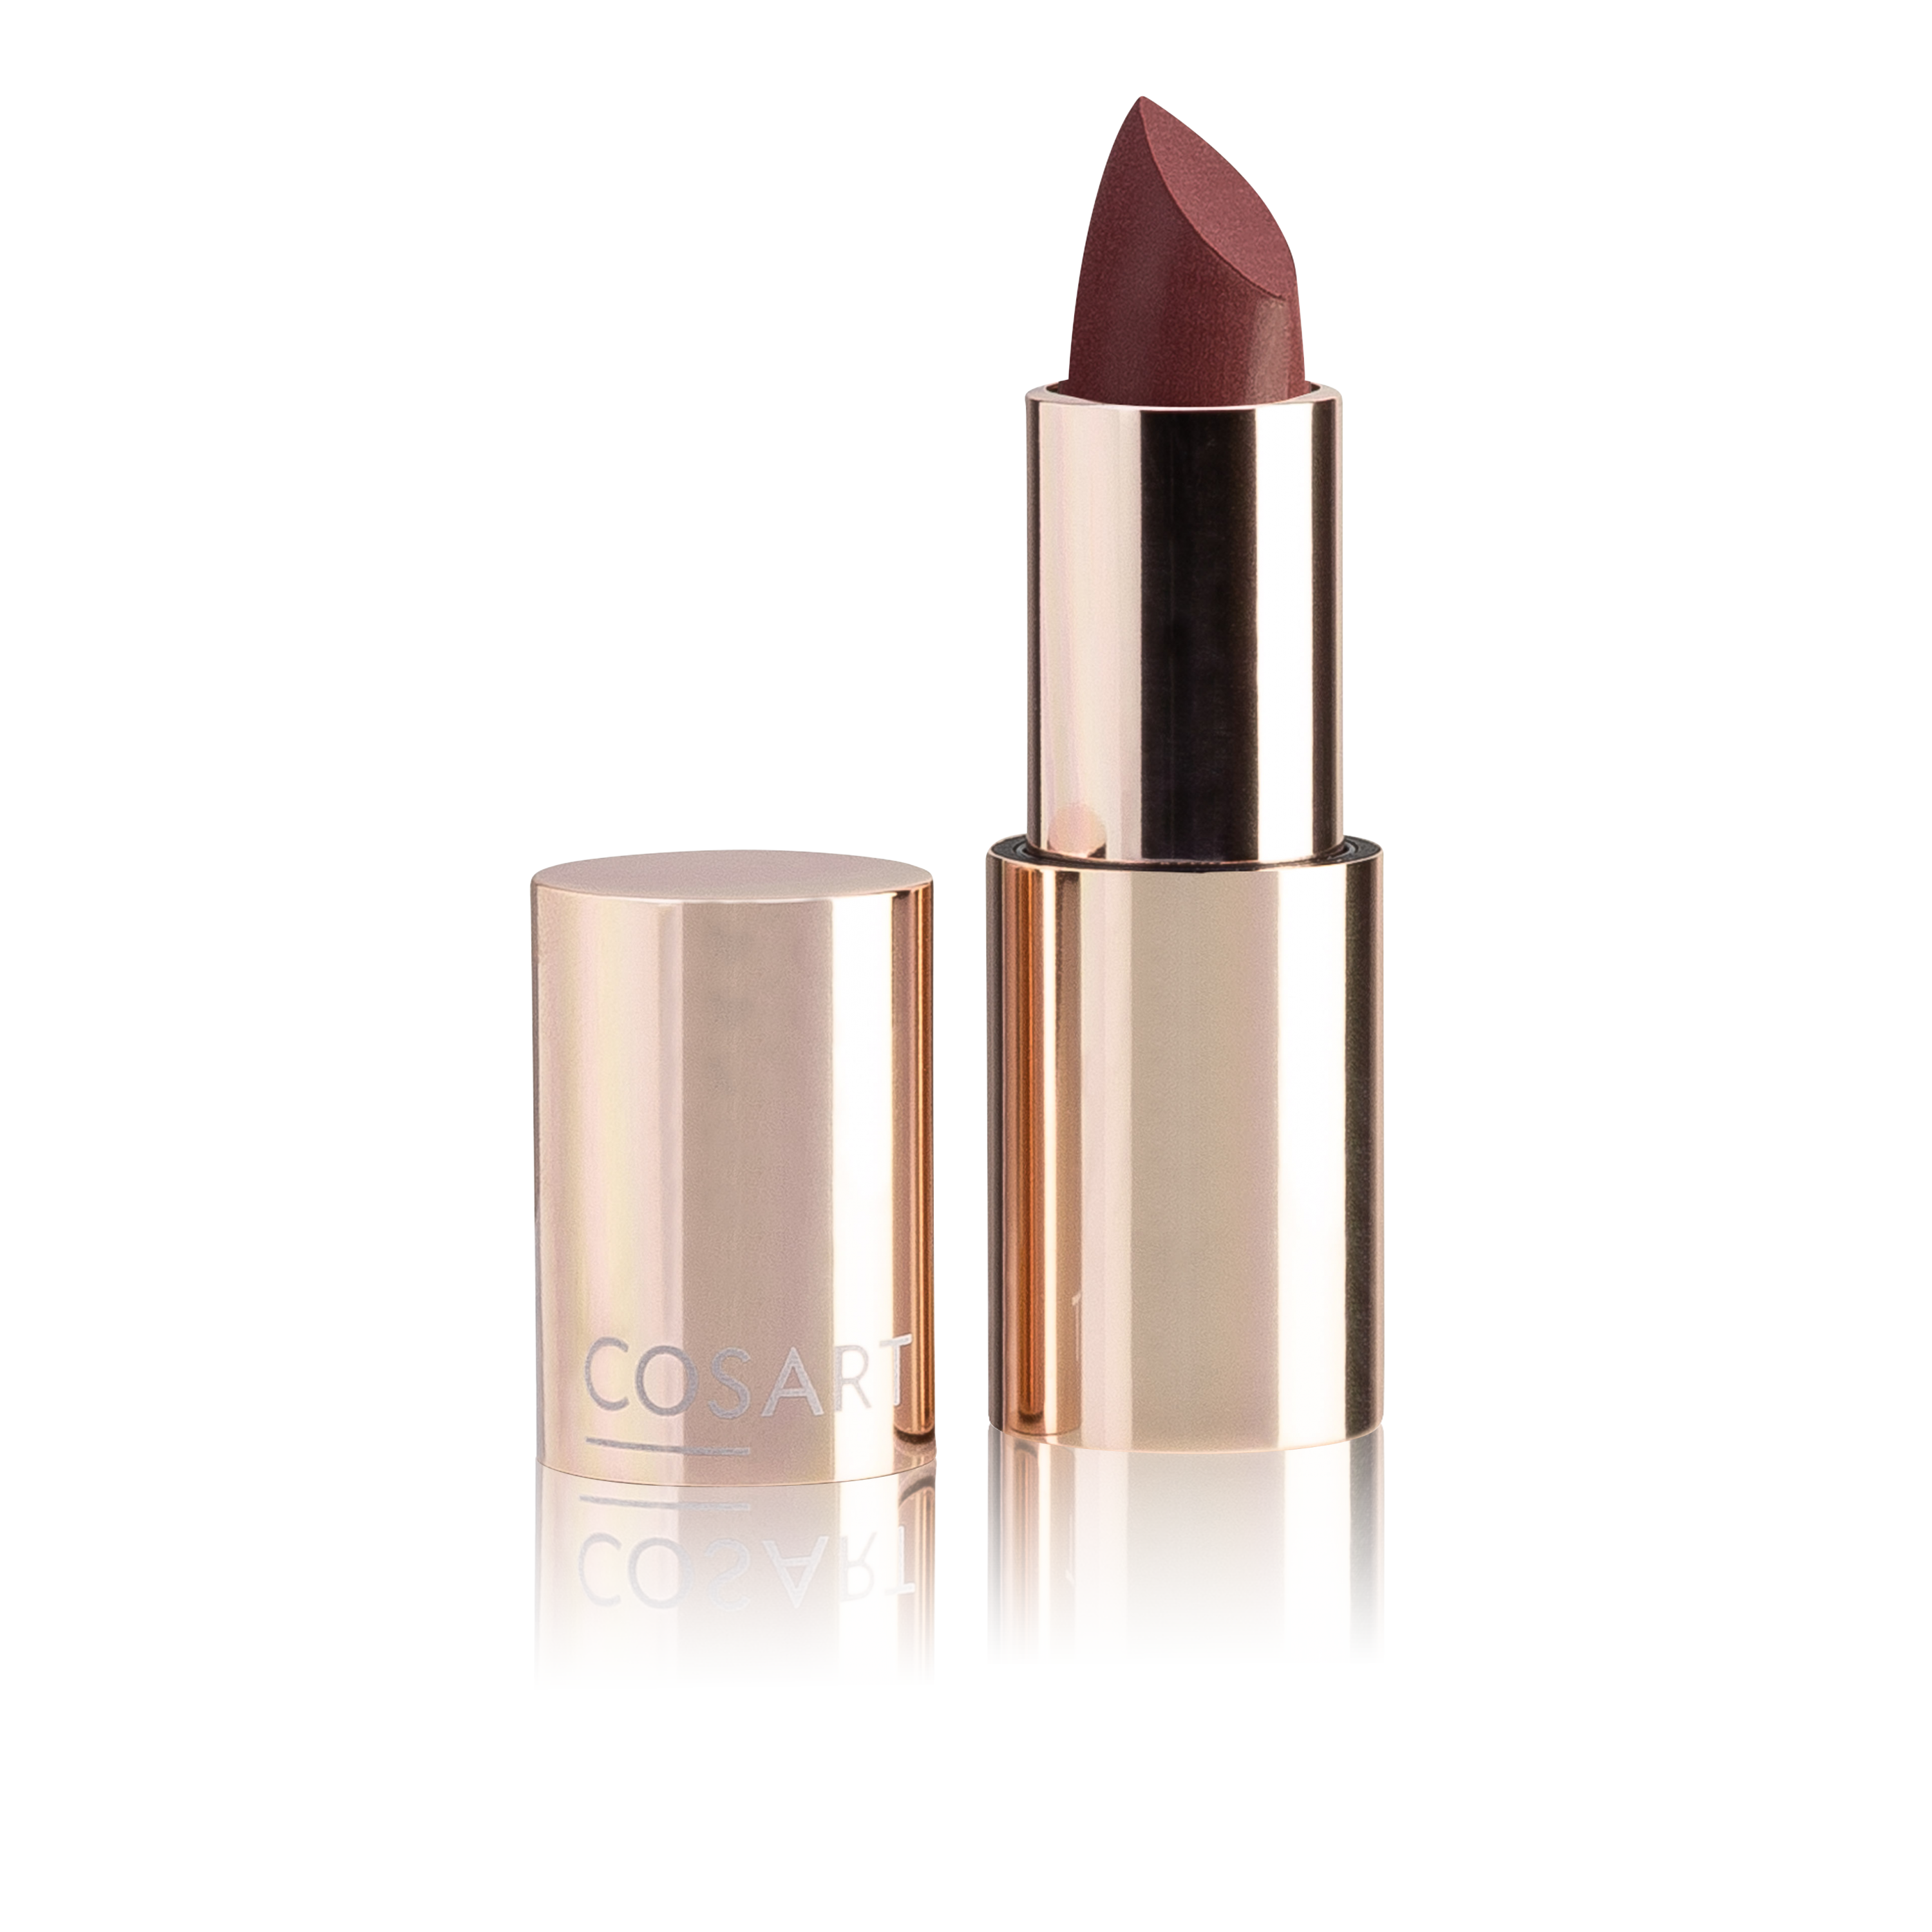 COSART Lipstick Elegance geranie 3020 3,5 g